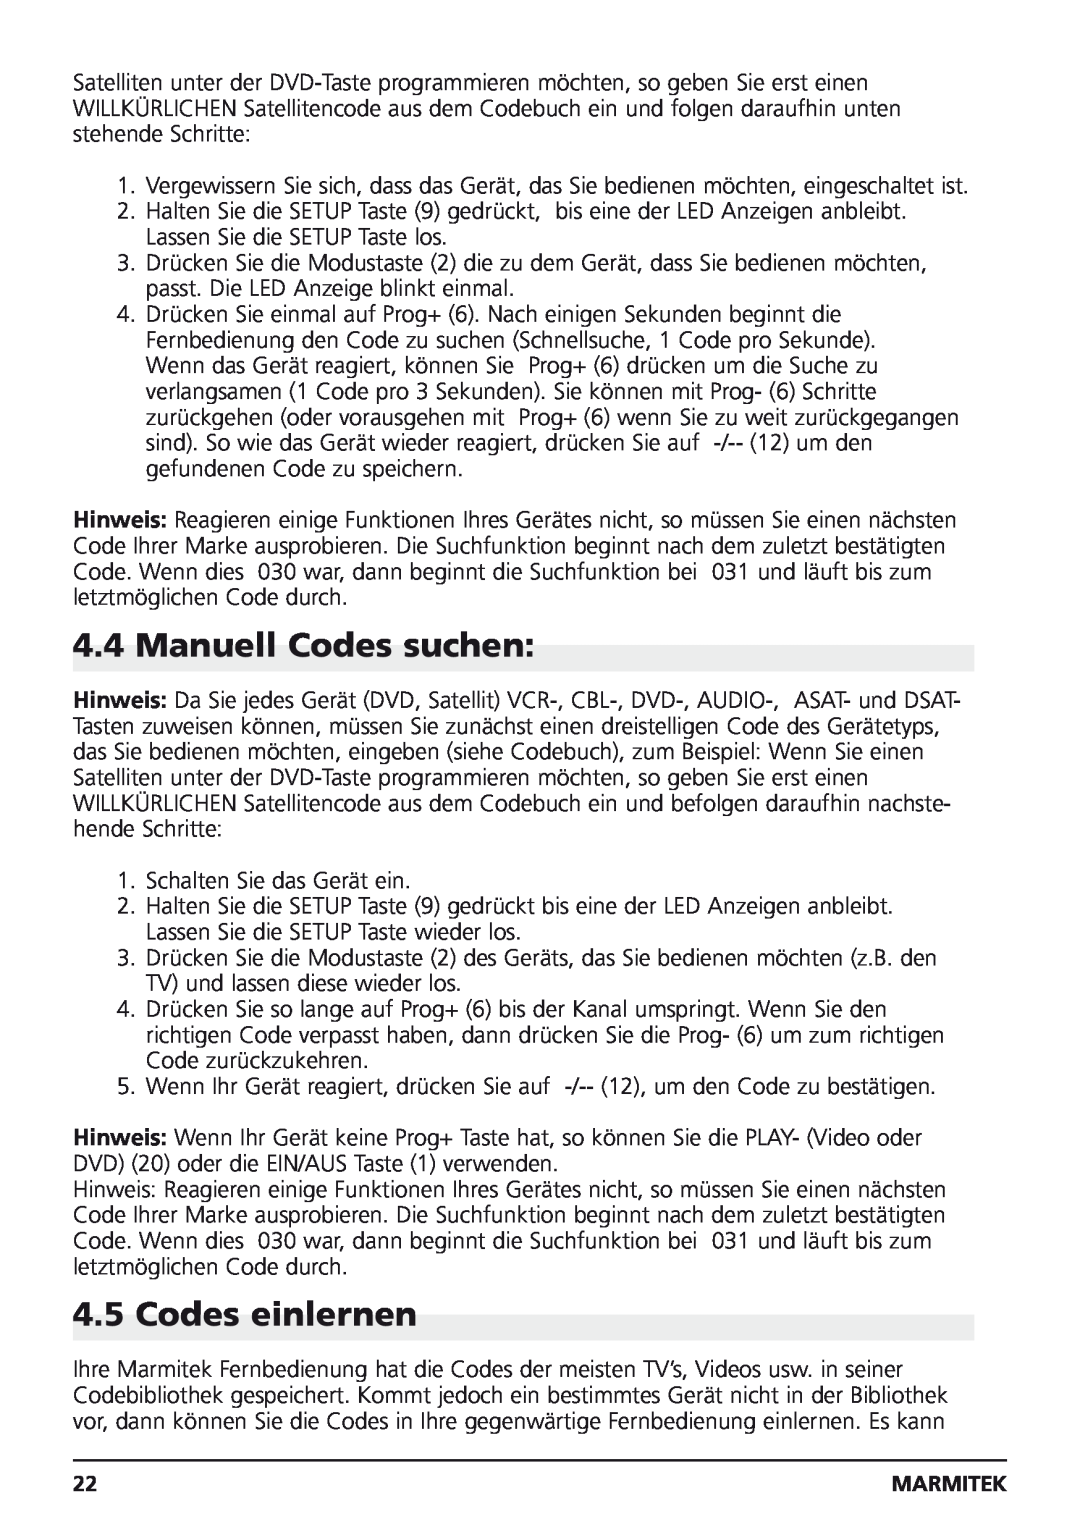 Marmitek Easycontrol 8 owner manual Manuell Codes suchen, Codes einlernen 